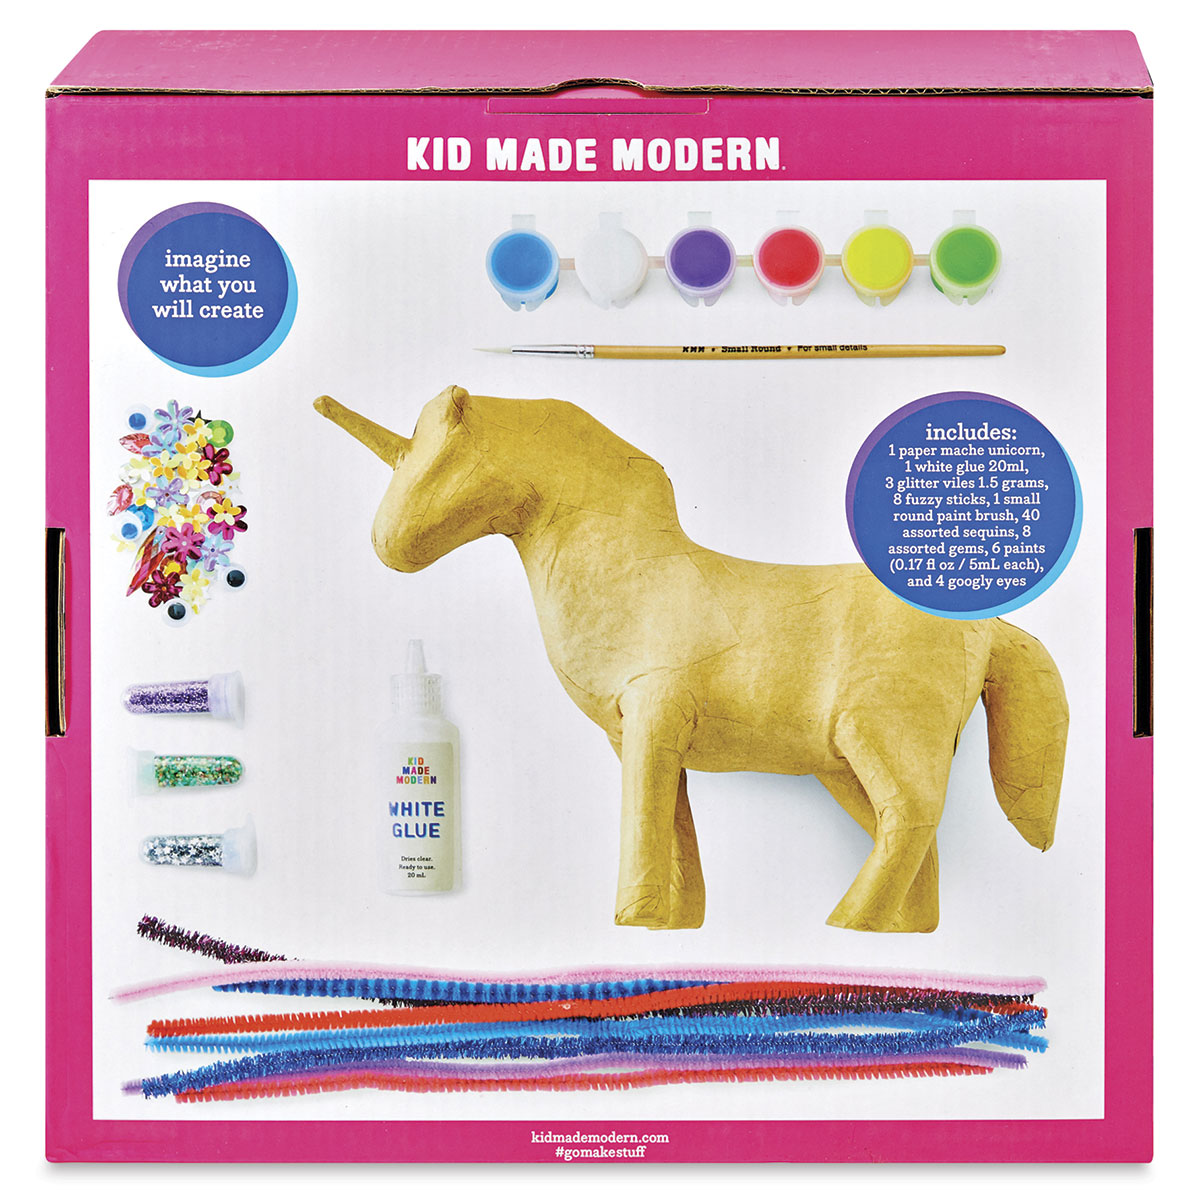 Paper Mache Unicorn Kit